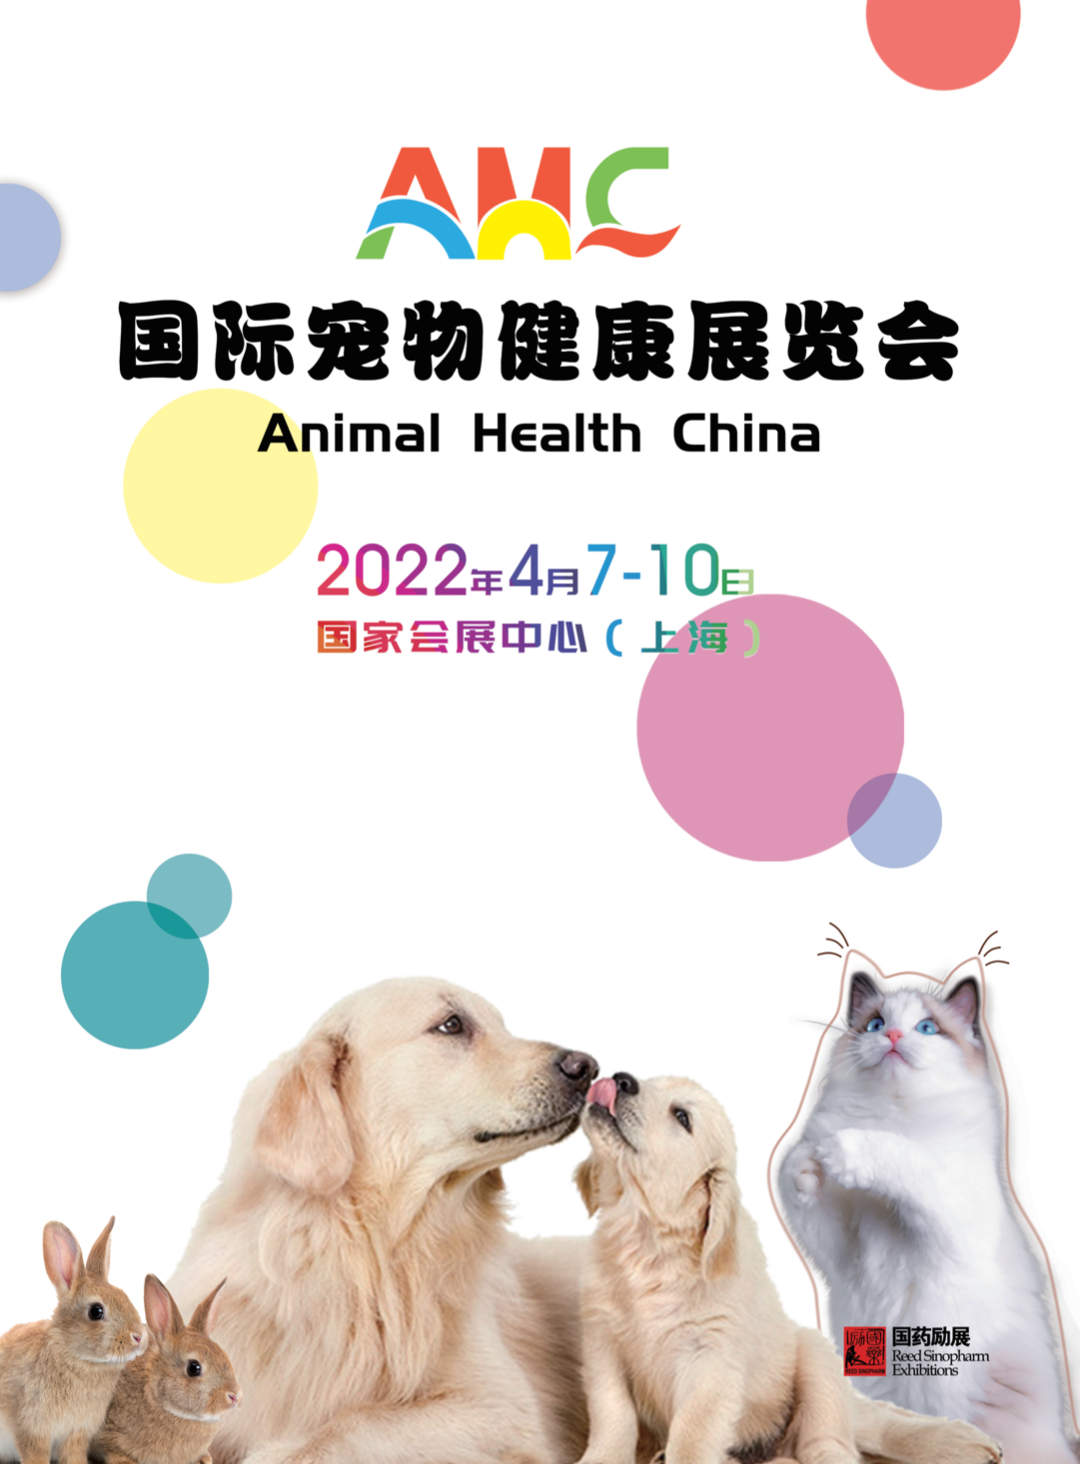 山東海迪科將如期參加AHC國際寵物健康展覽會